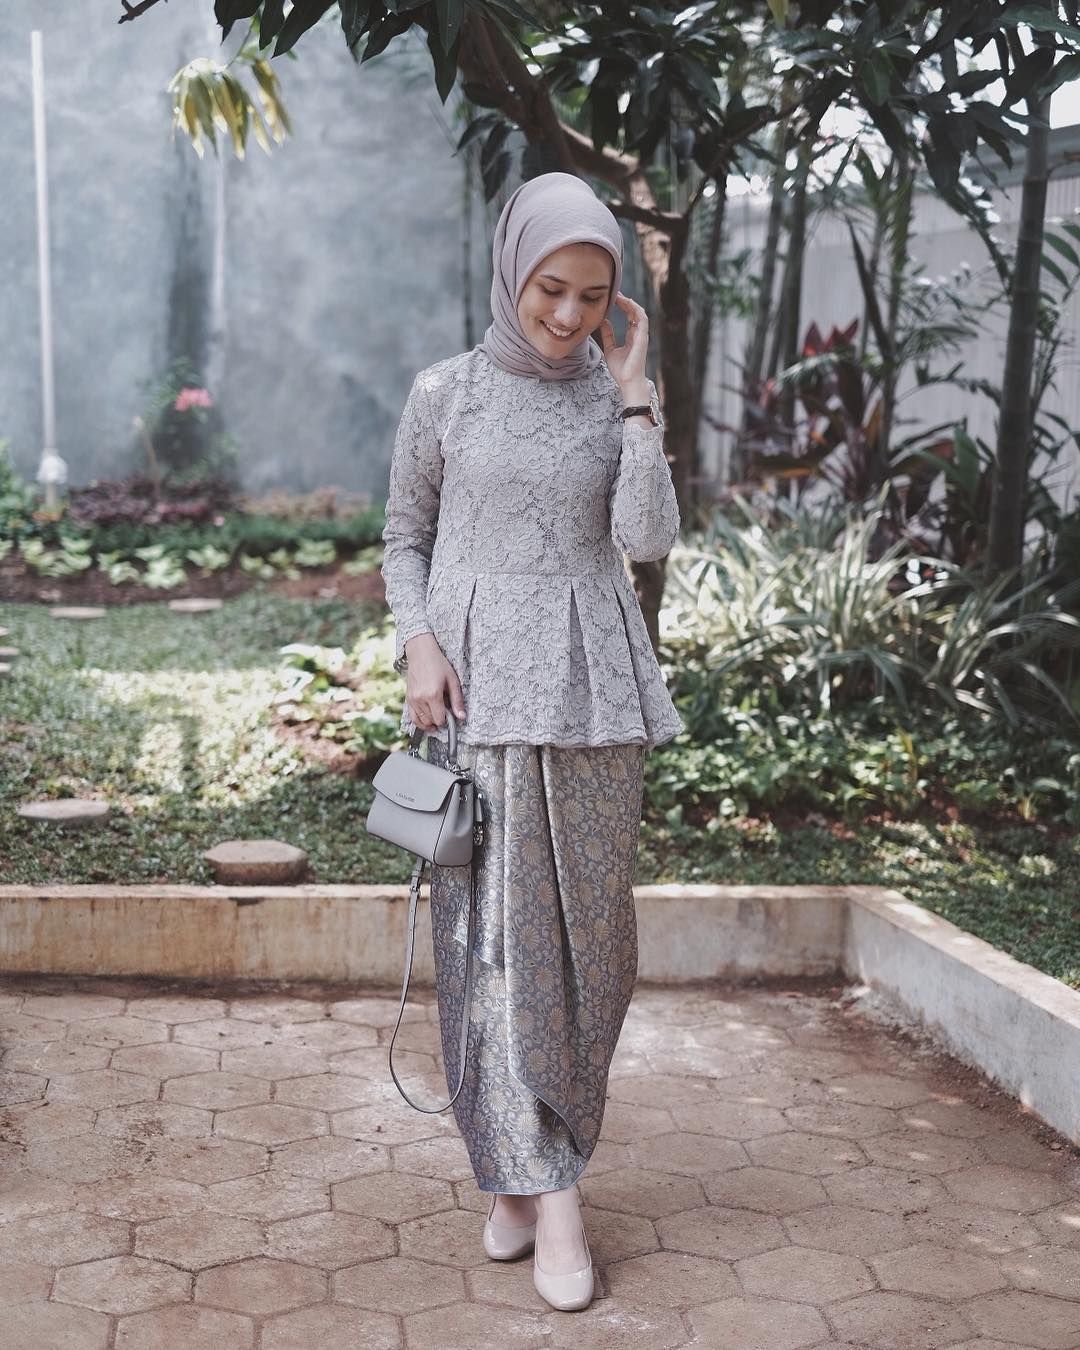 Hadiri Pesta dengan Outfit Hijab Modern Model Kebaya Peplum